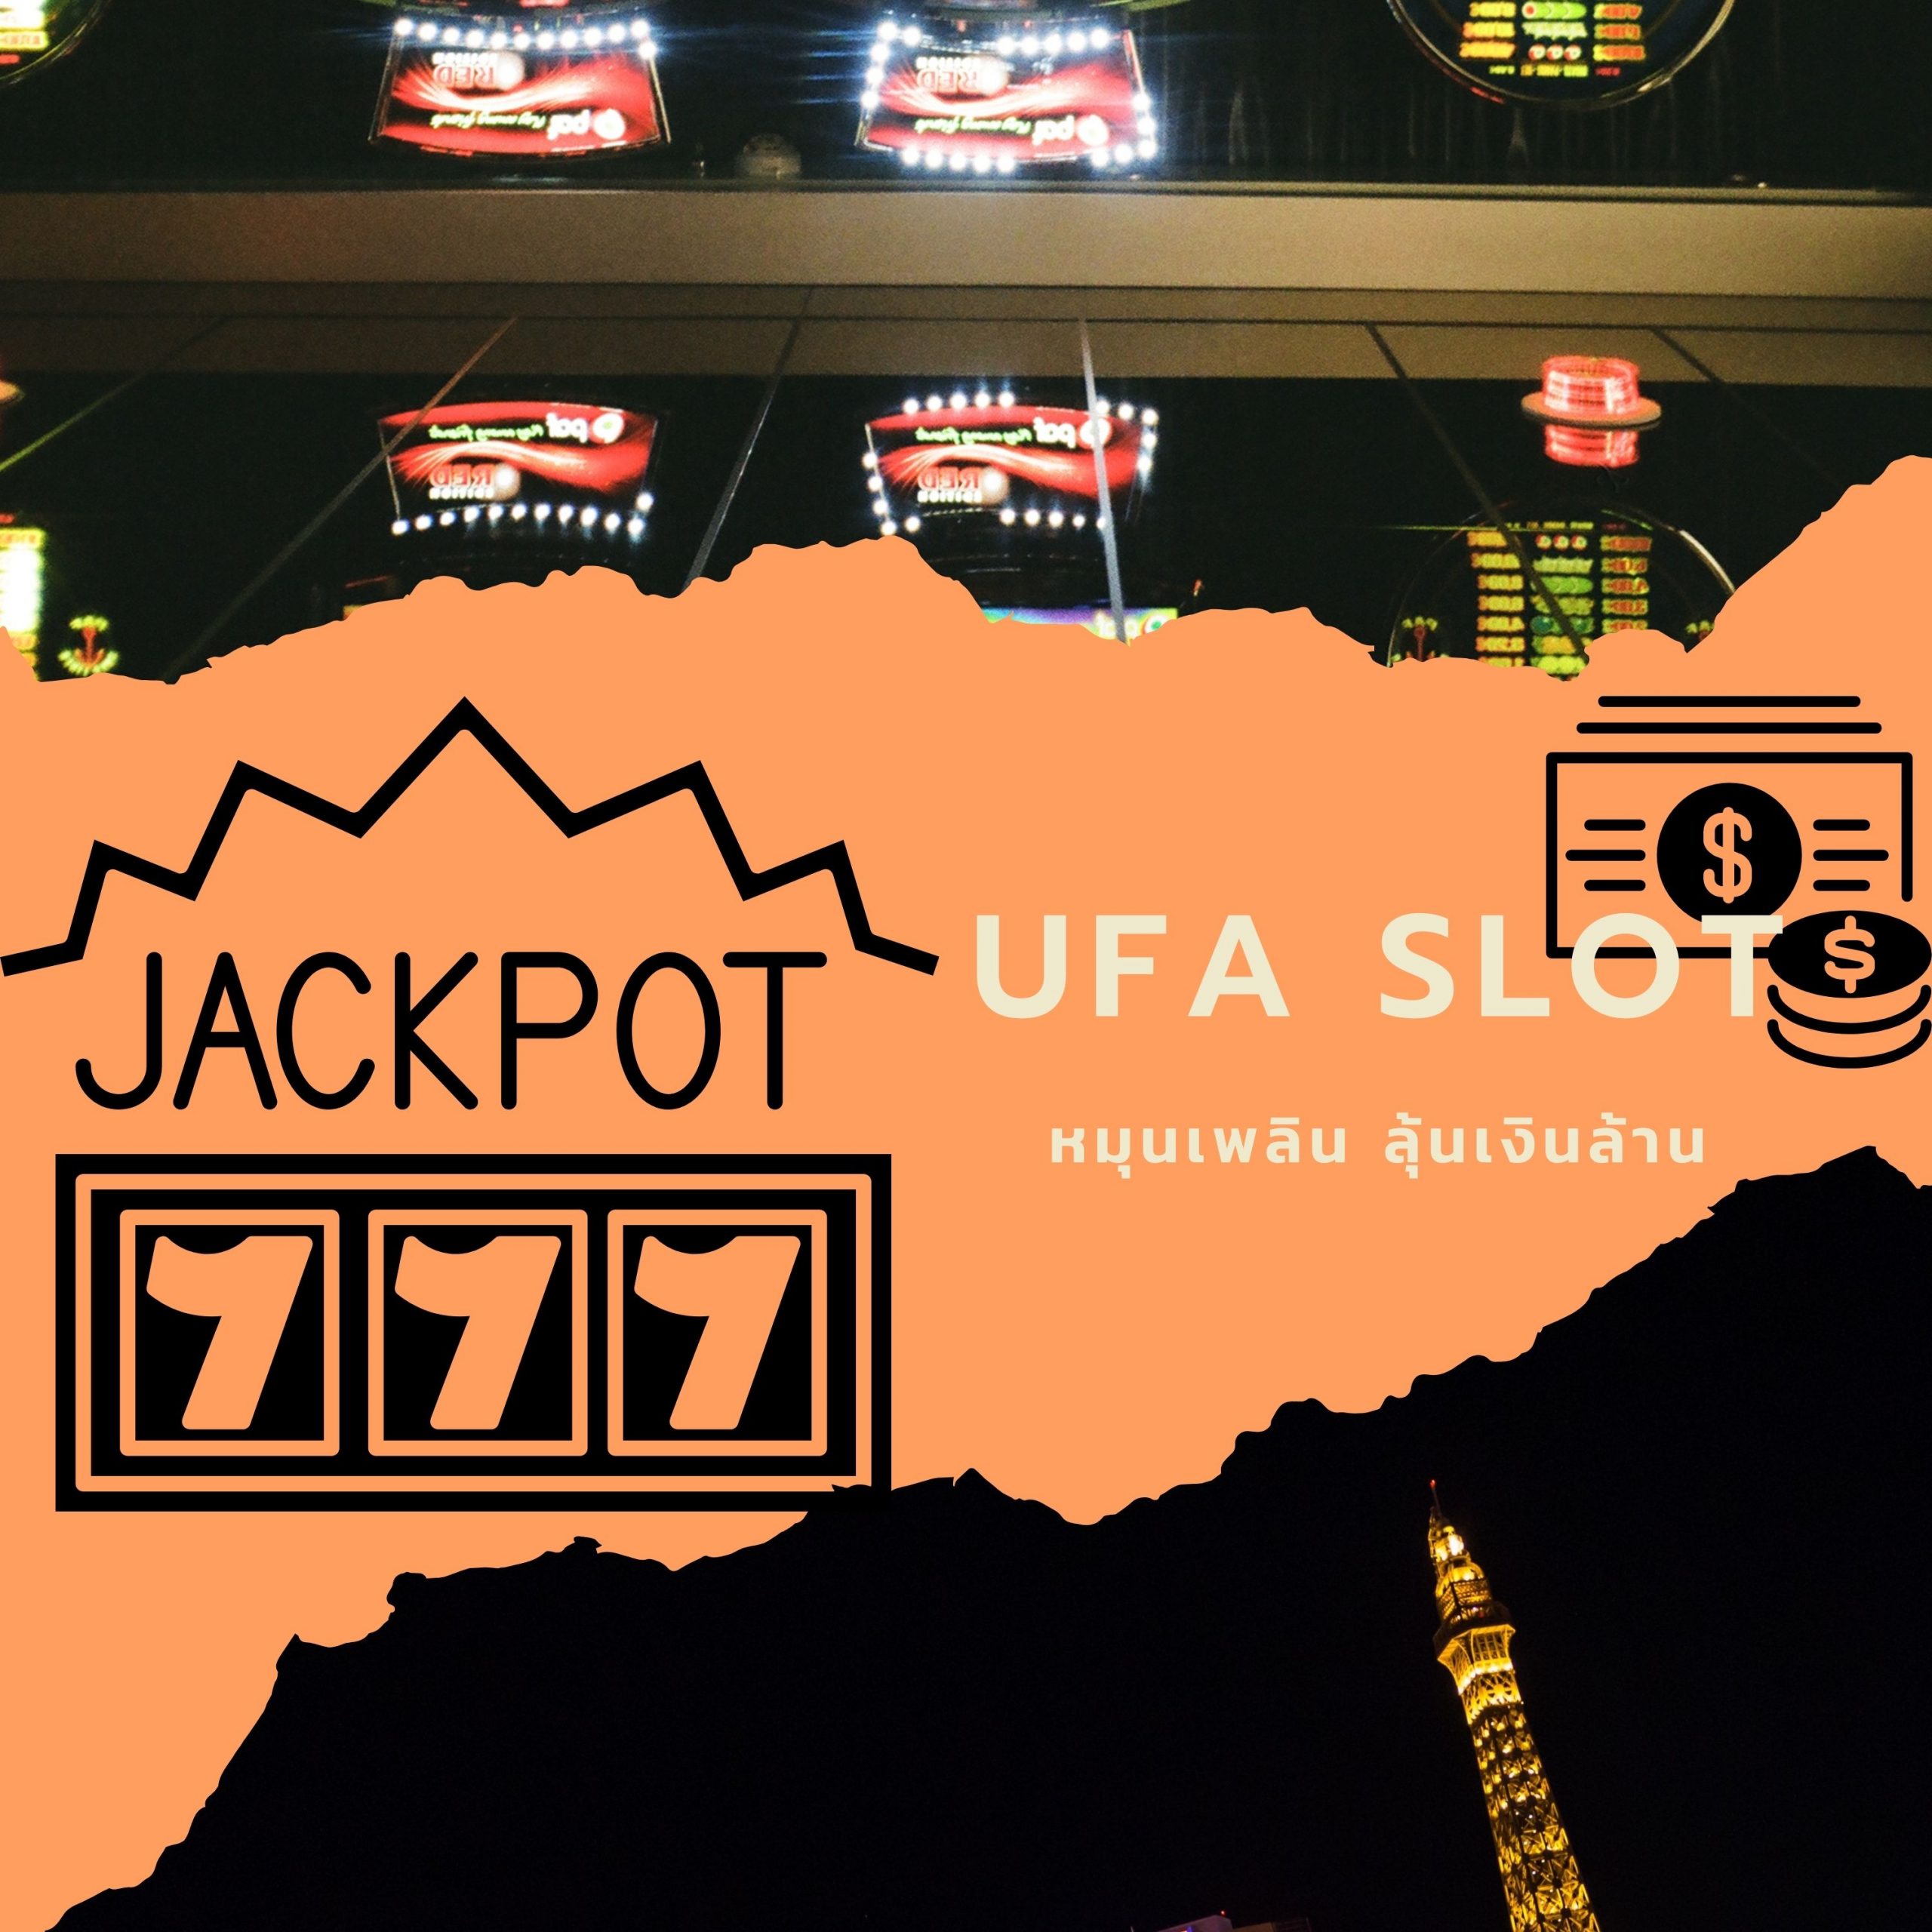 Ufa Slot ลุ้นเงิน